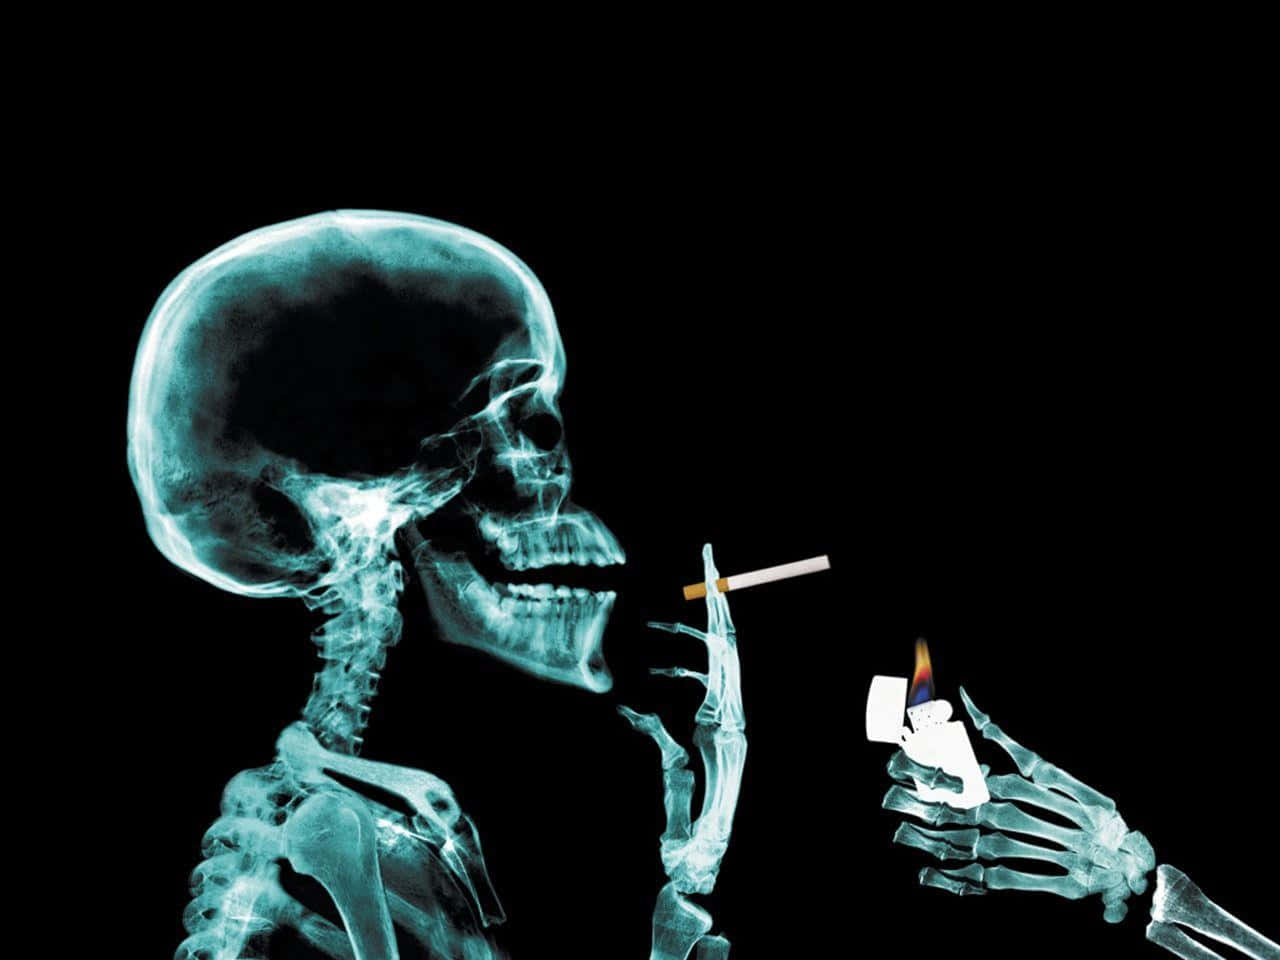 Imagemdetalhada De Raio-x De Um Esqueleto Humano.